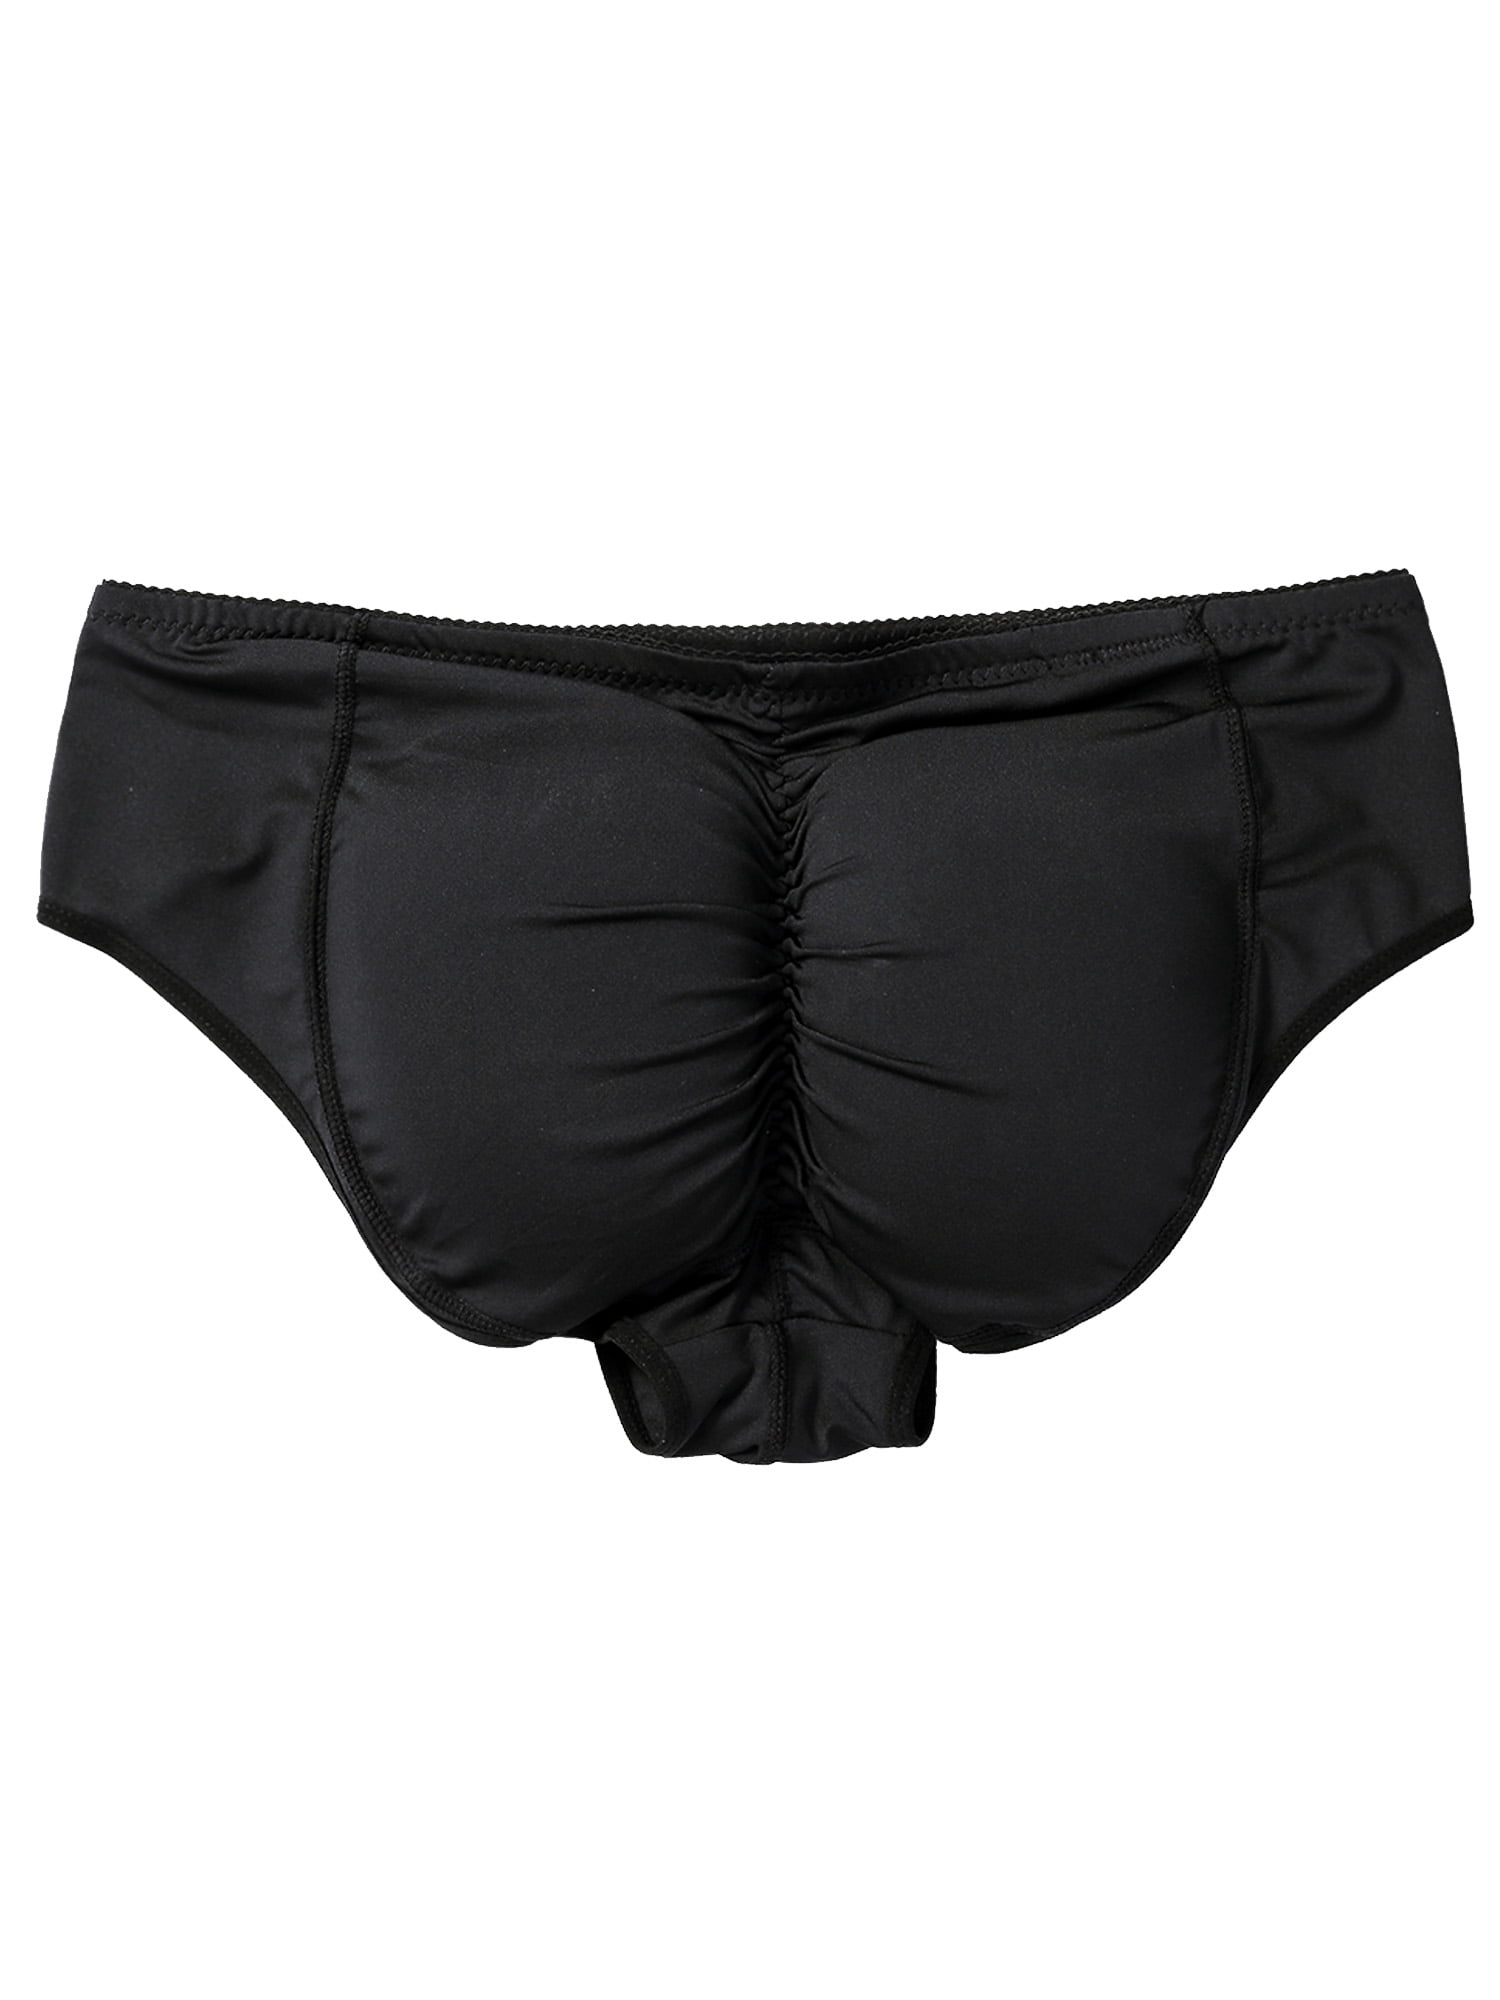 Men Padded Underwear Butt Lifter Boxer Briefs Booster Hip Enhancer  Bodyshort US